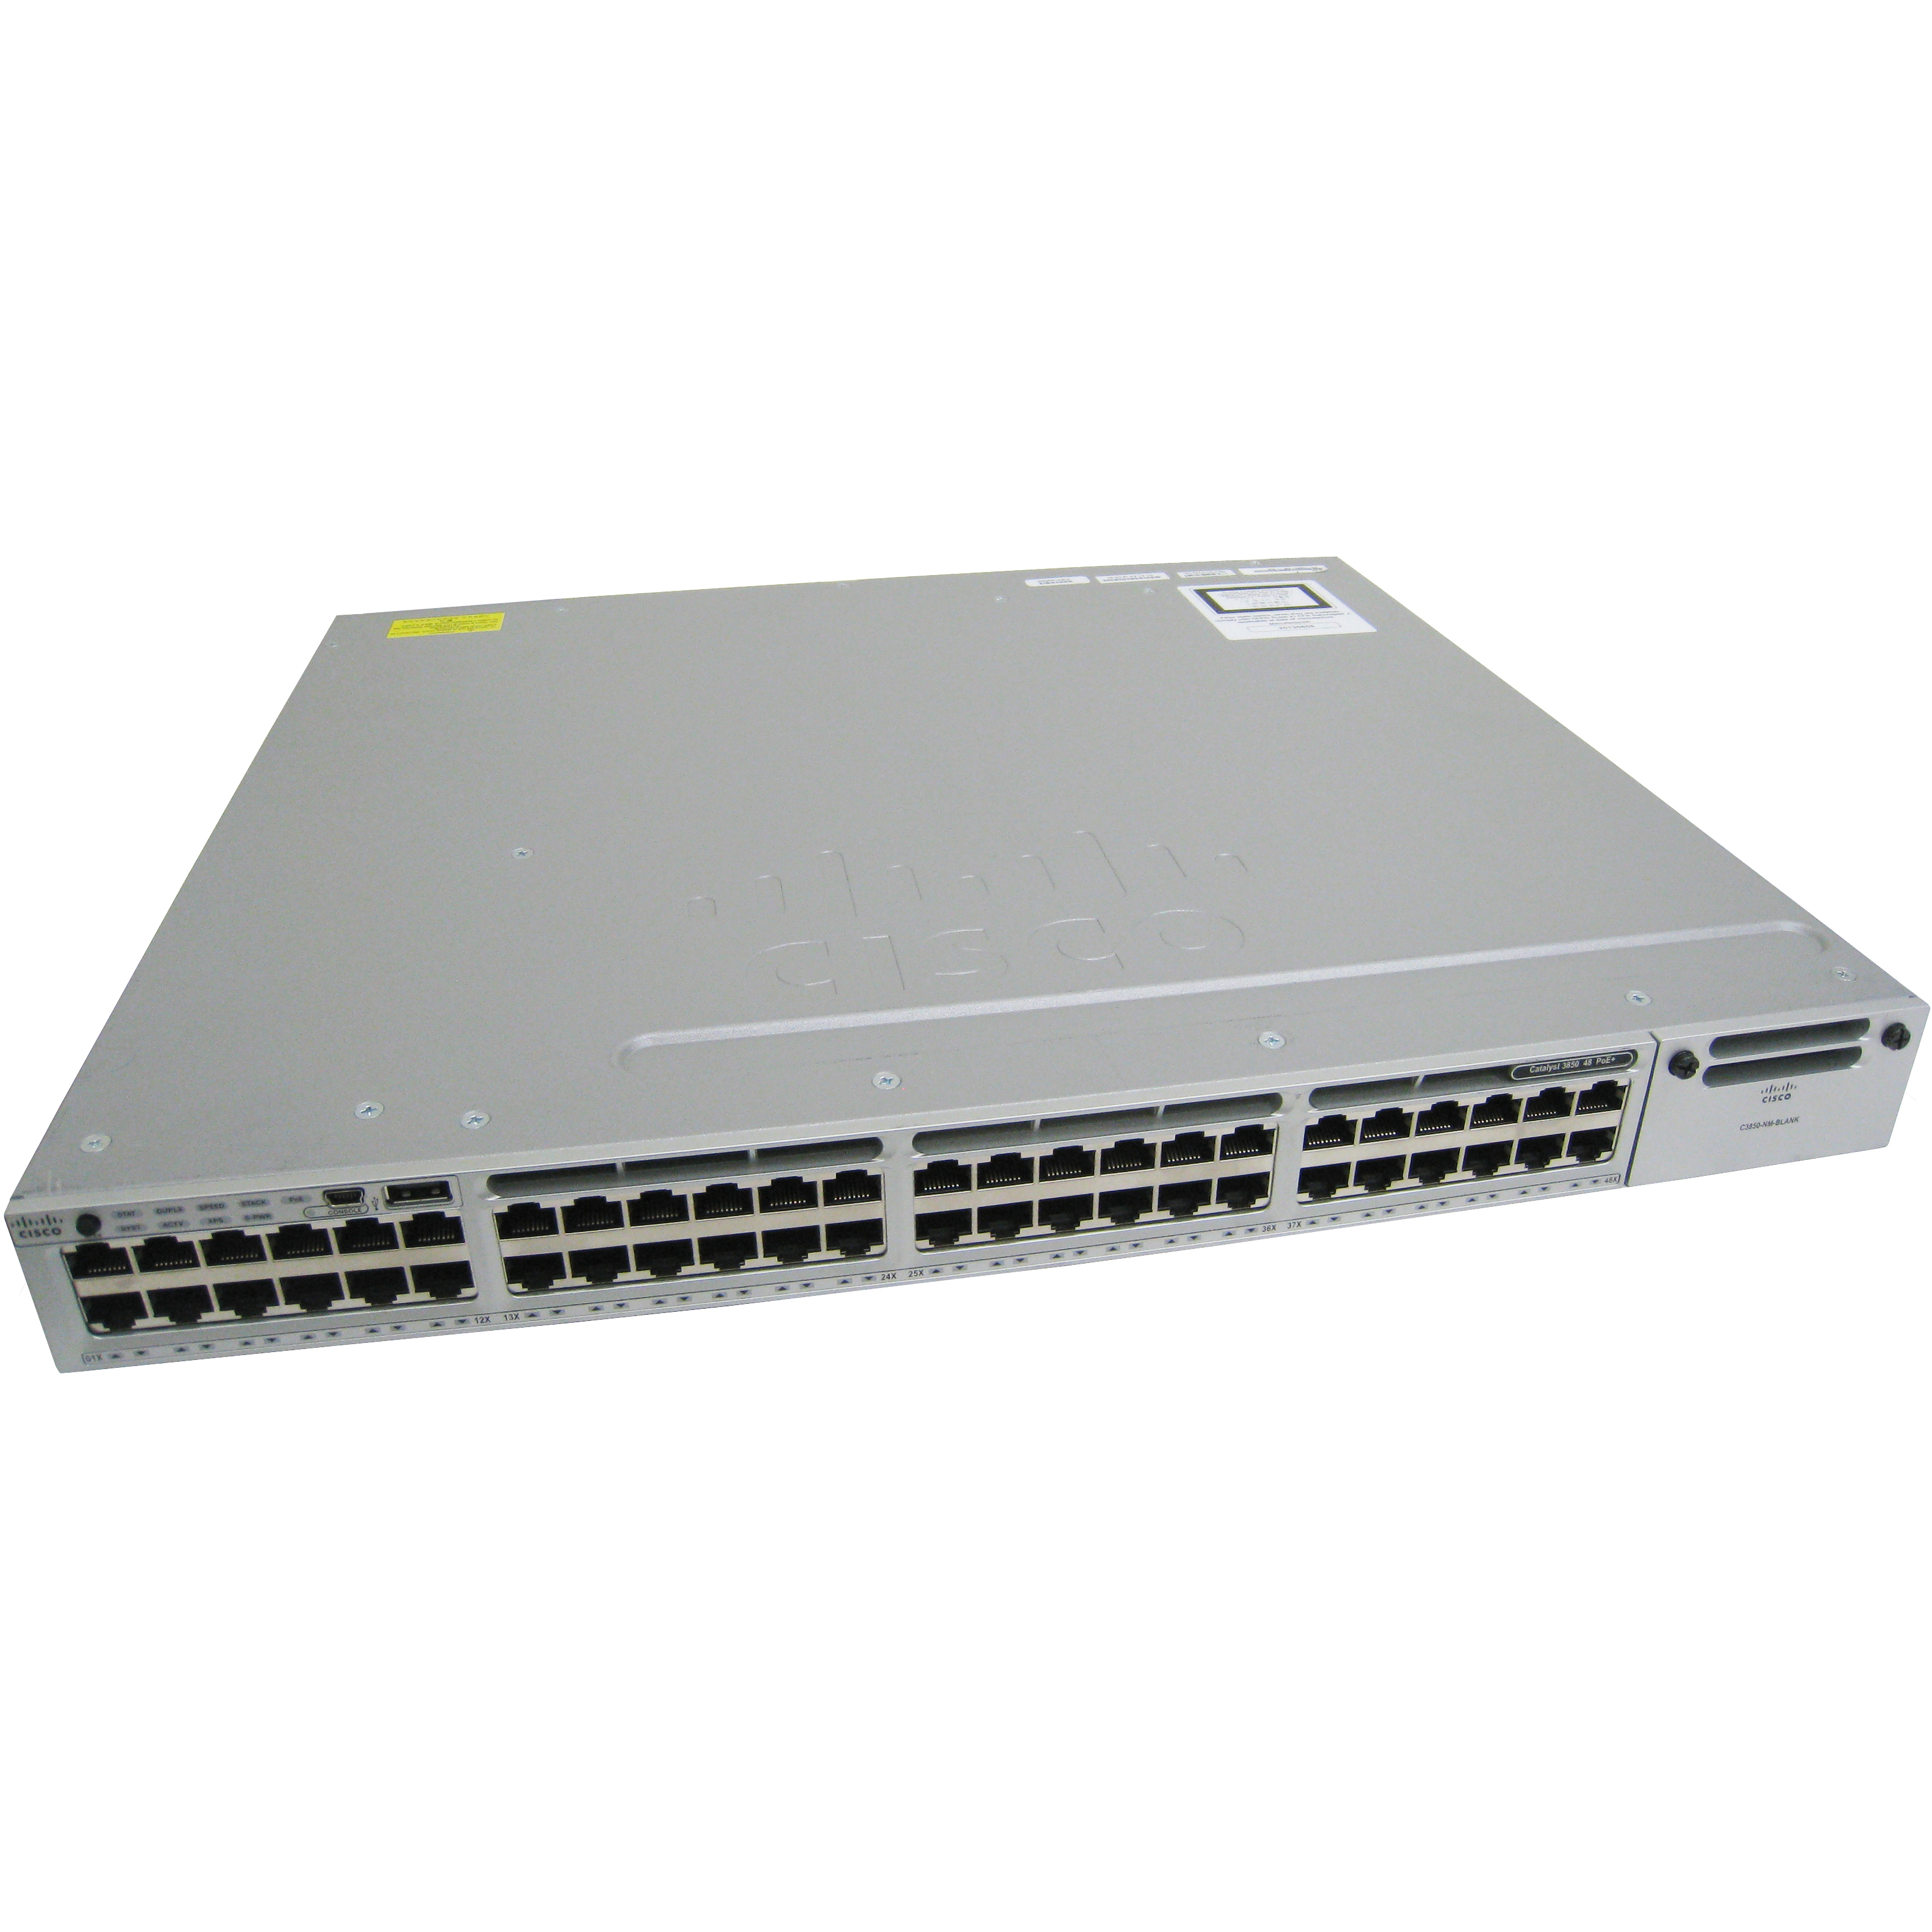 Cisco WS-C3850-48P-E